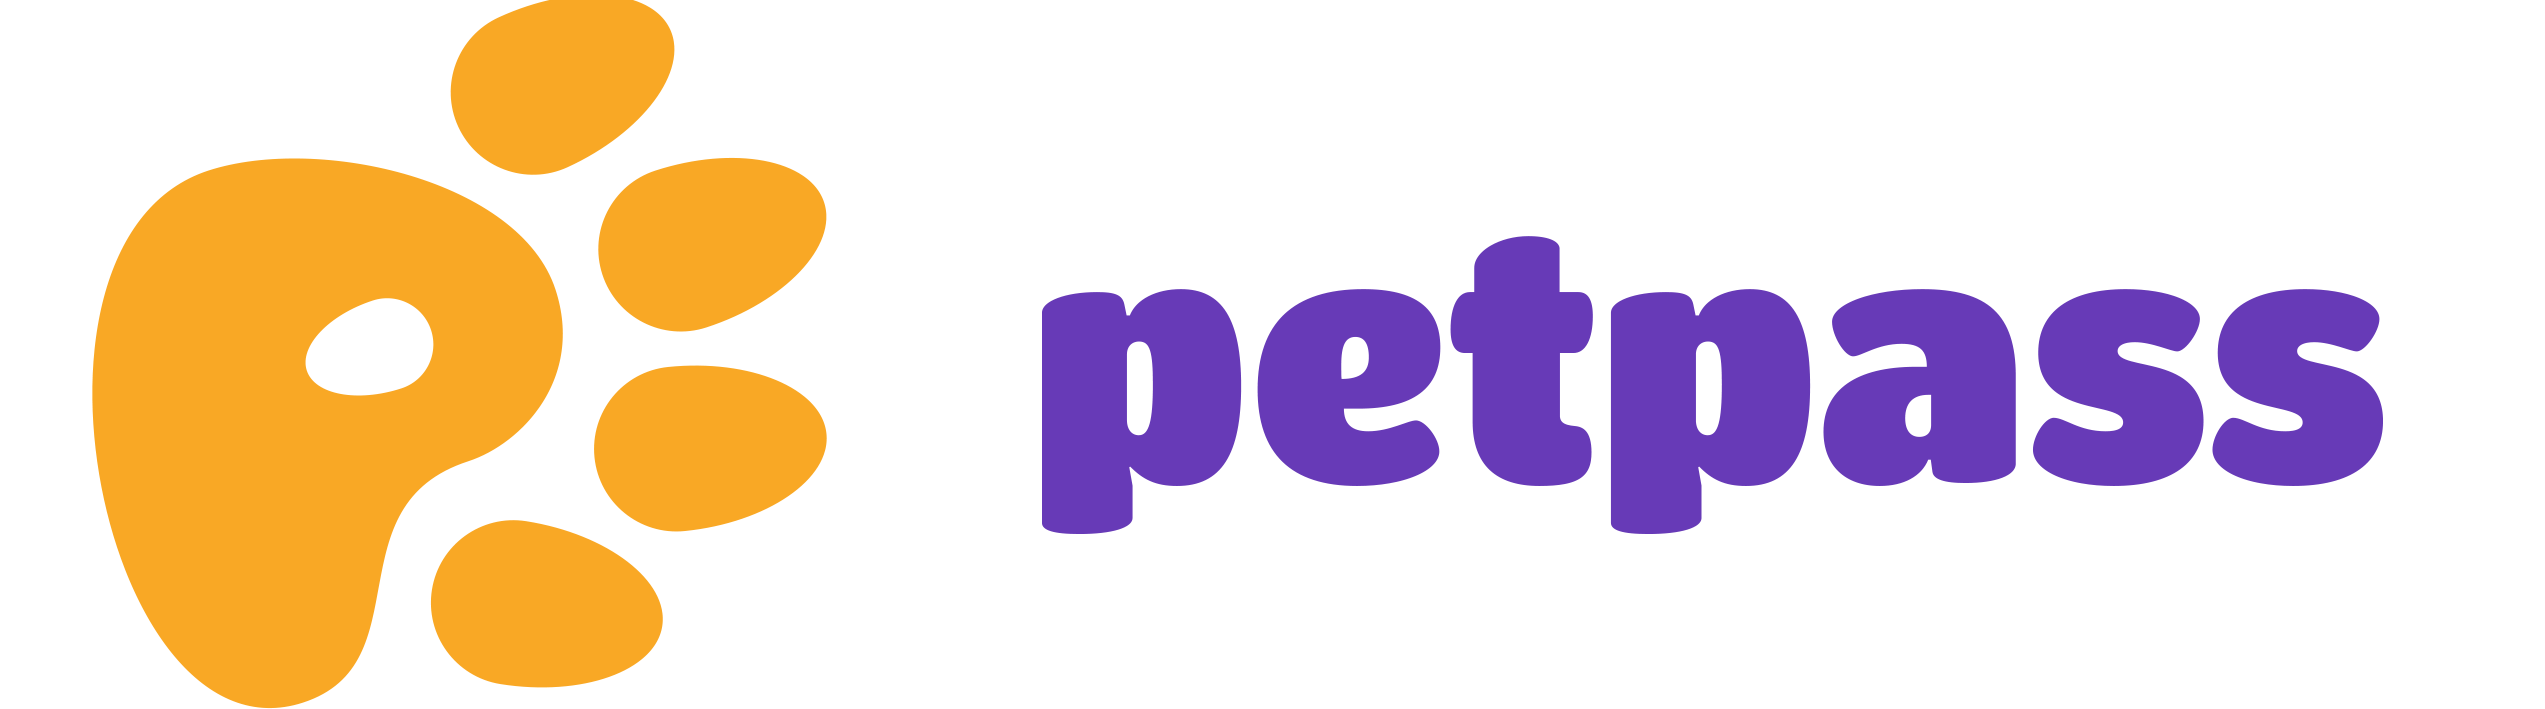 PetPASS logo